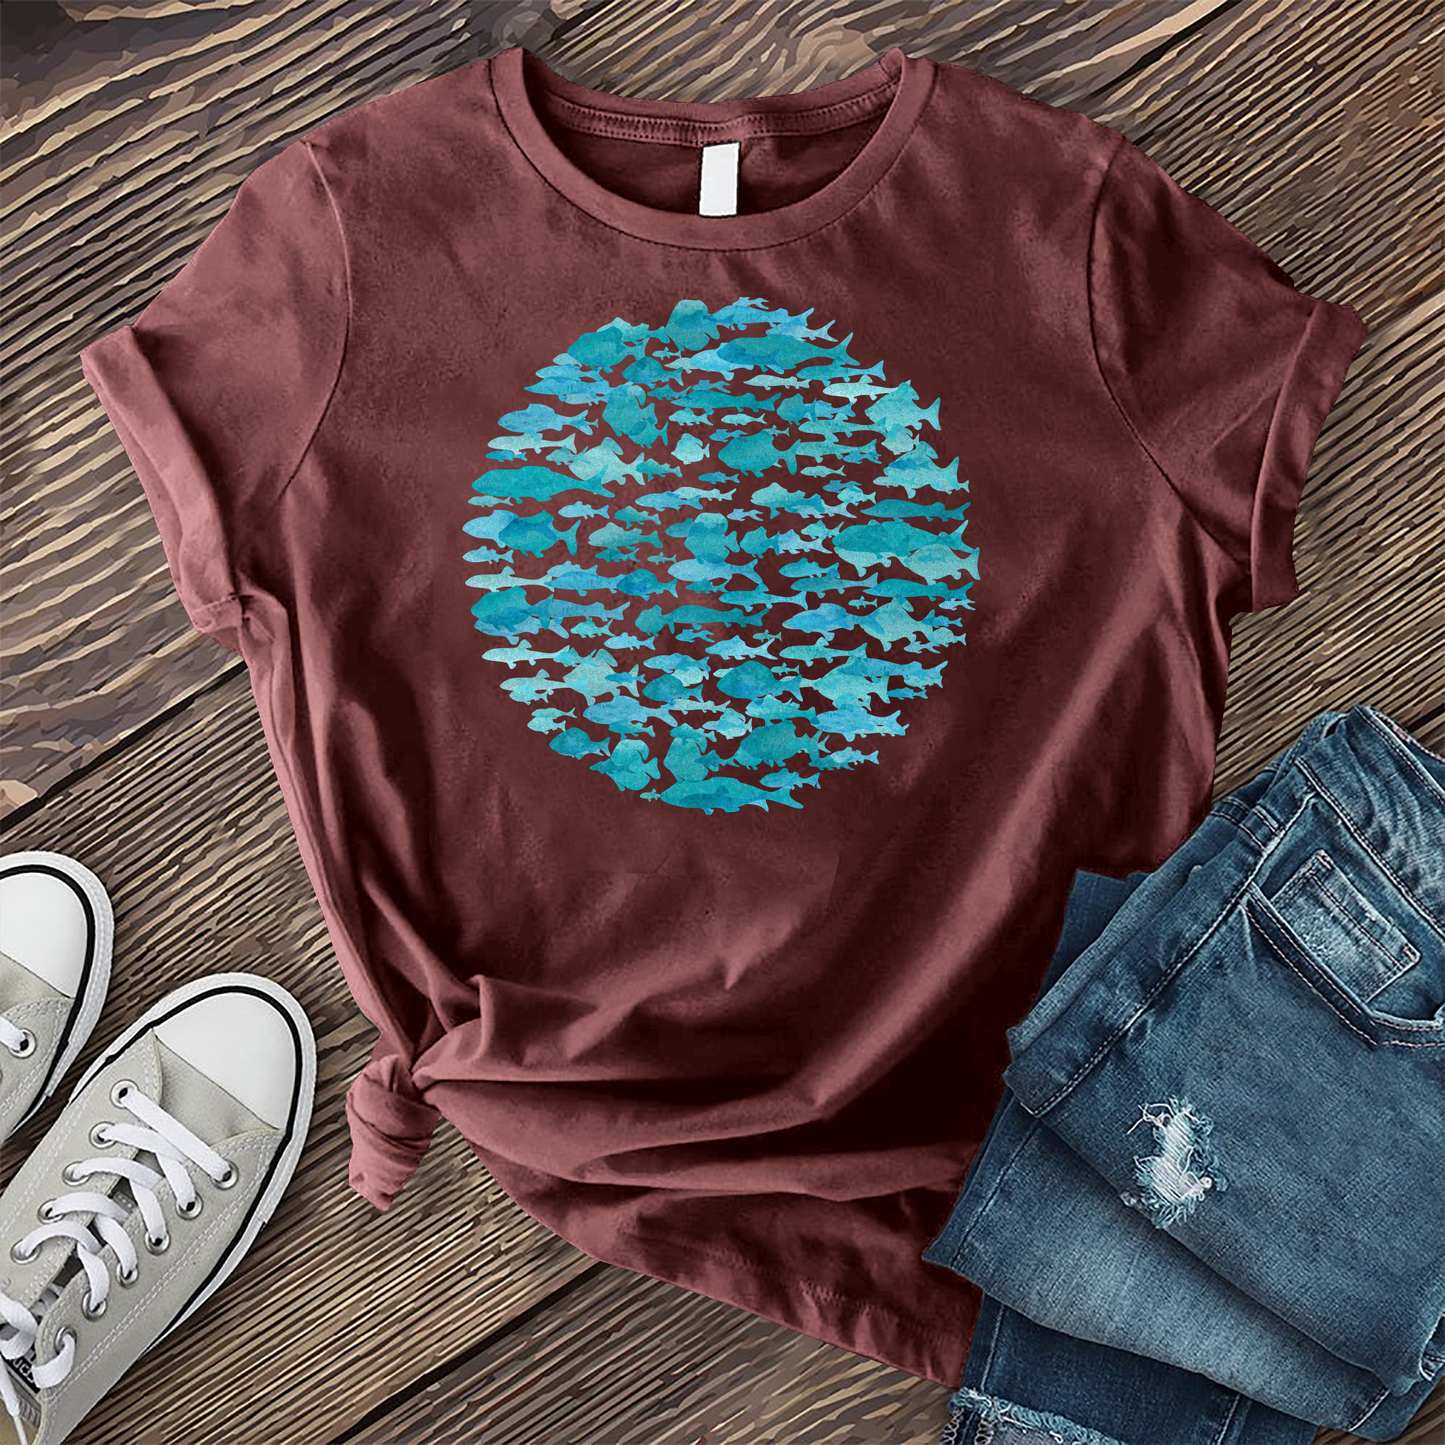 Watercolor Fish Circle T-shirt